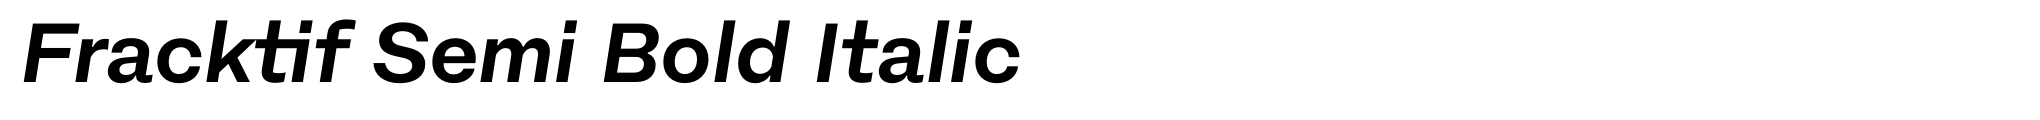 Fracktif Semi Bold Italic image